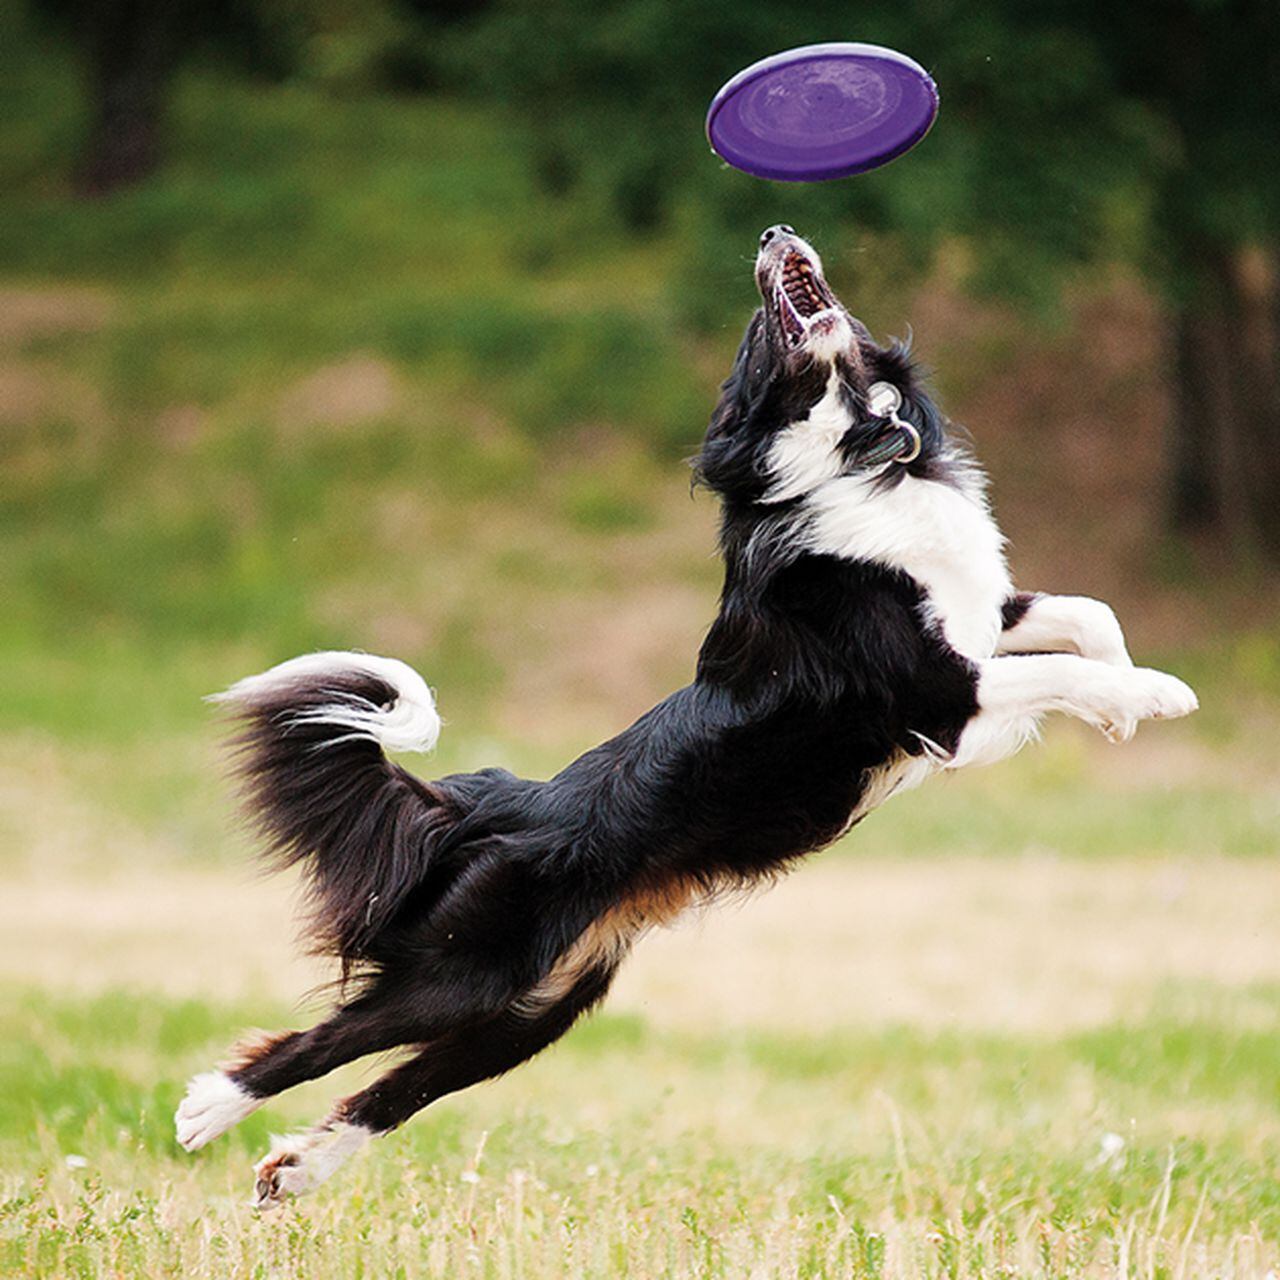 ᐅ Jugar al Frisbee con tu perro. Un deporte muy de moda